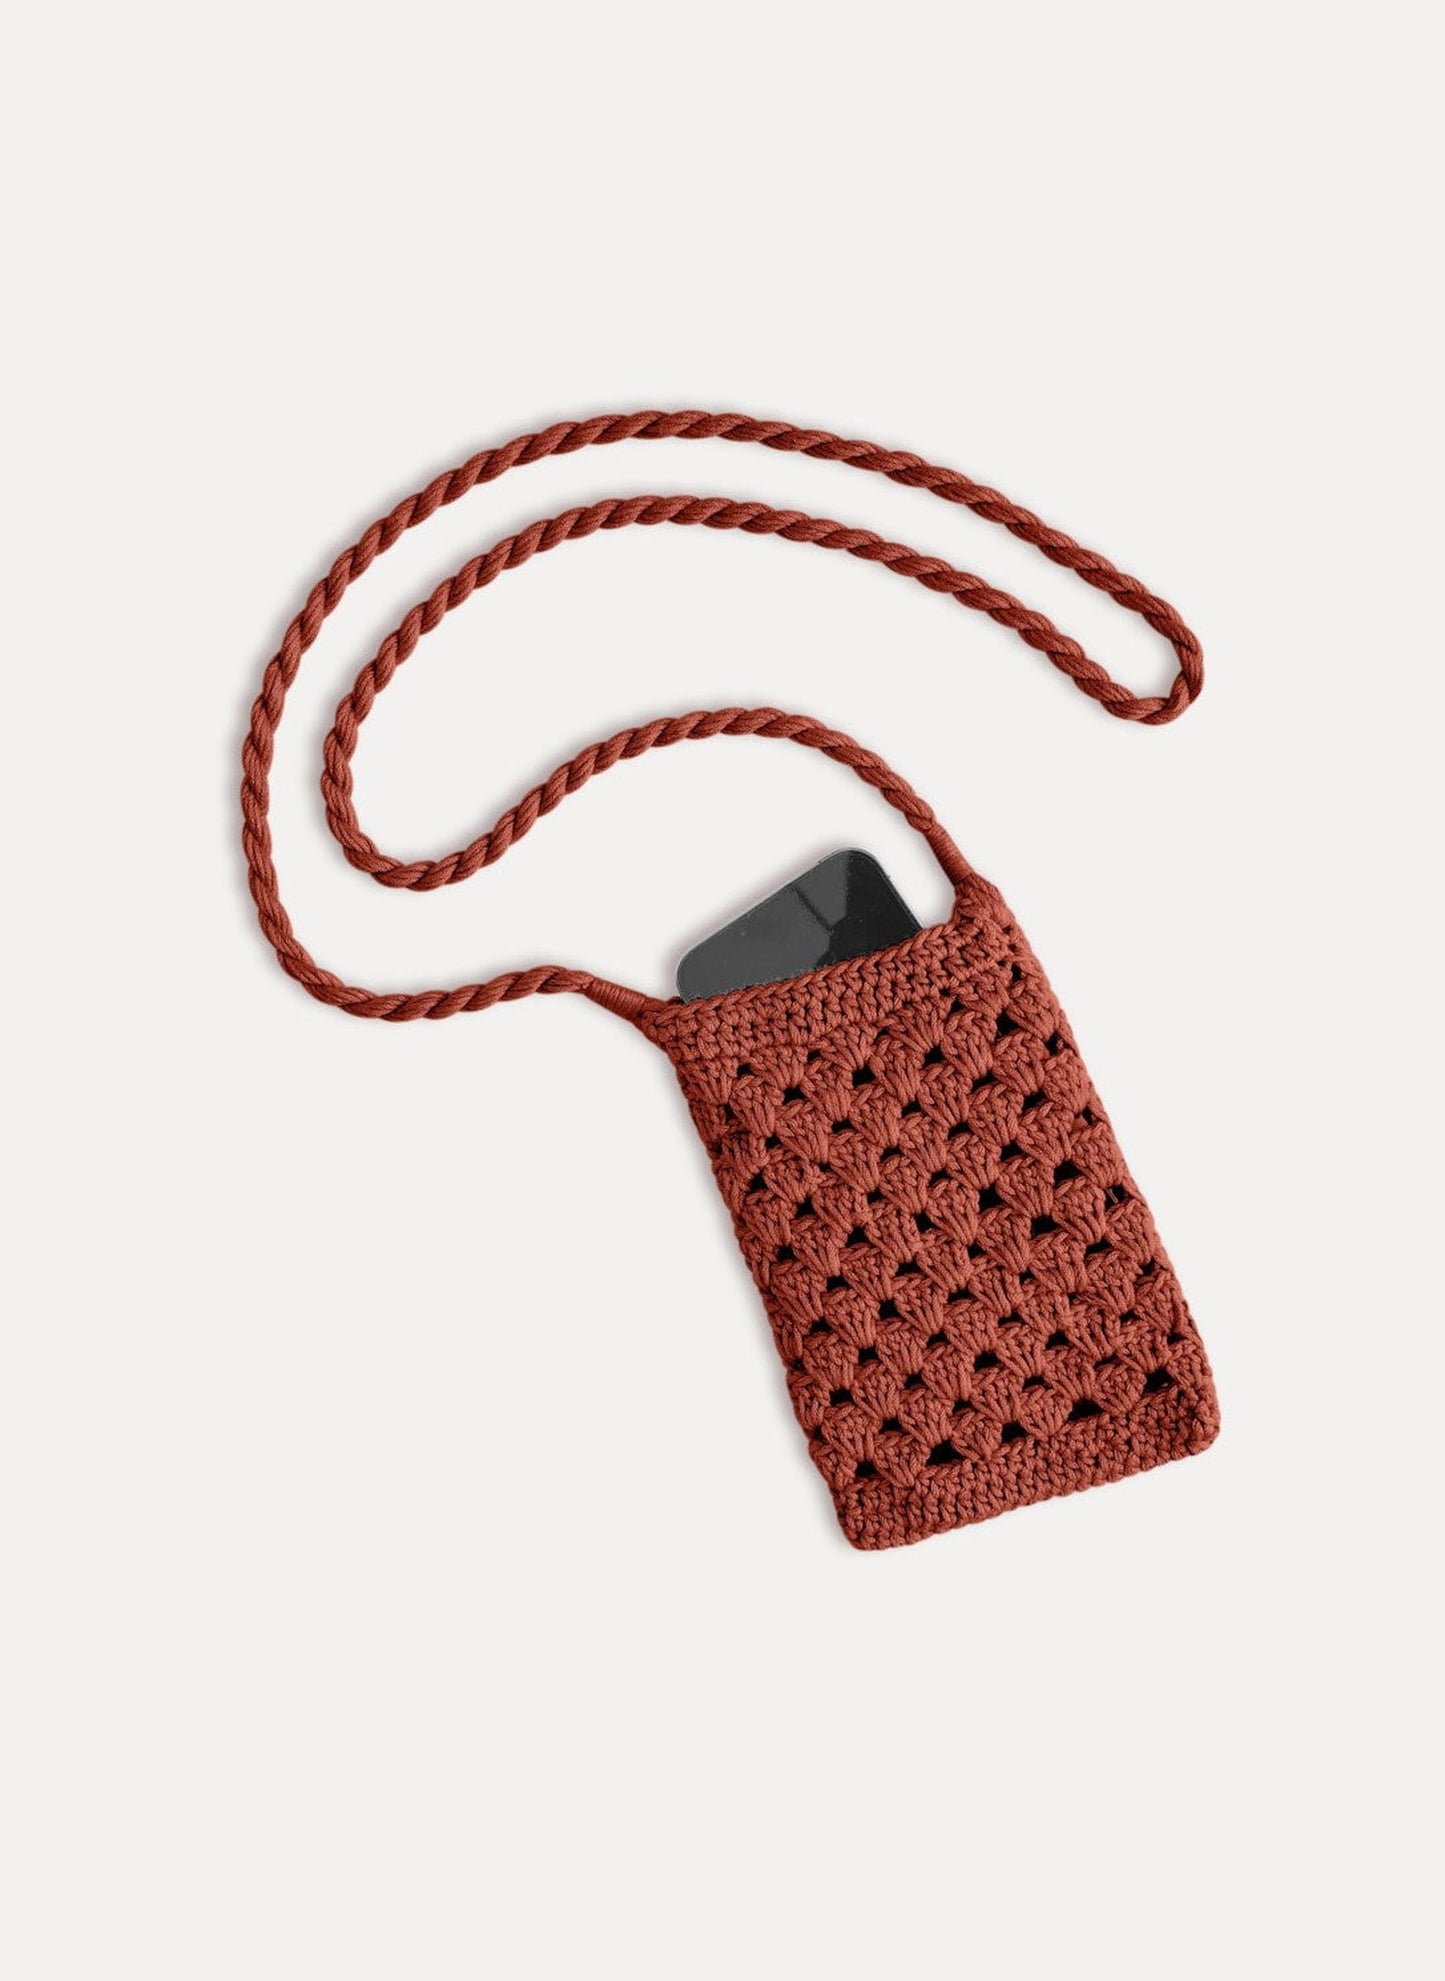 Crochet Phone Holder - Brown